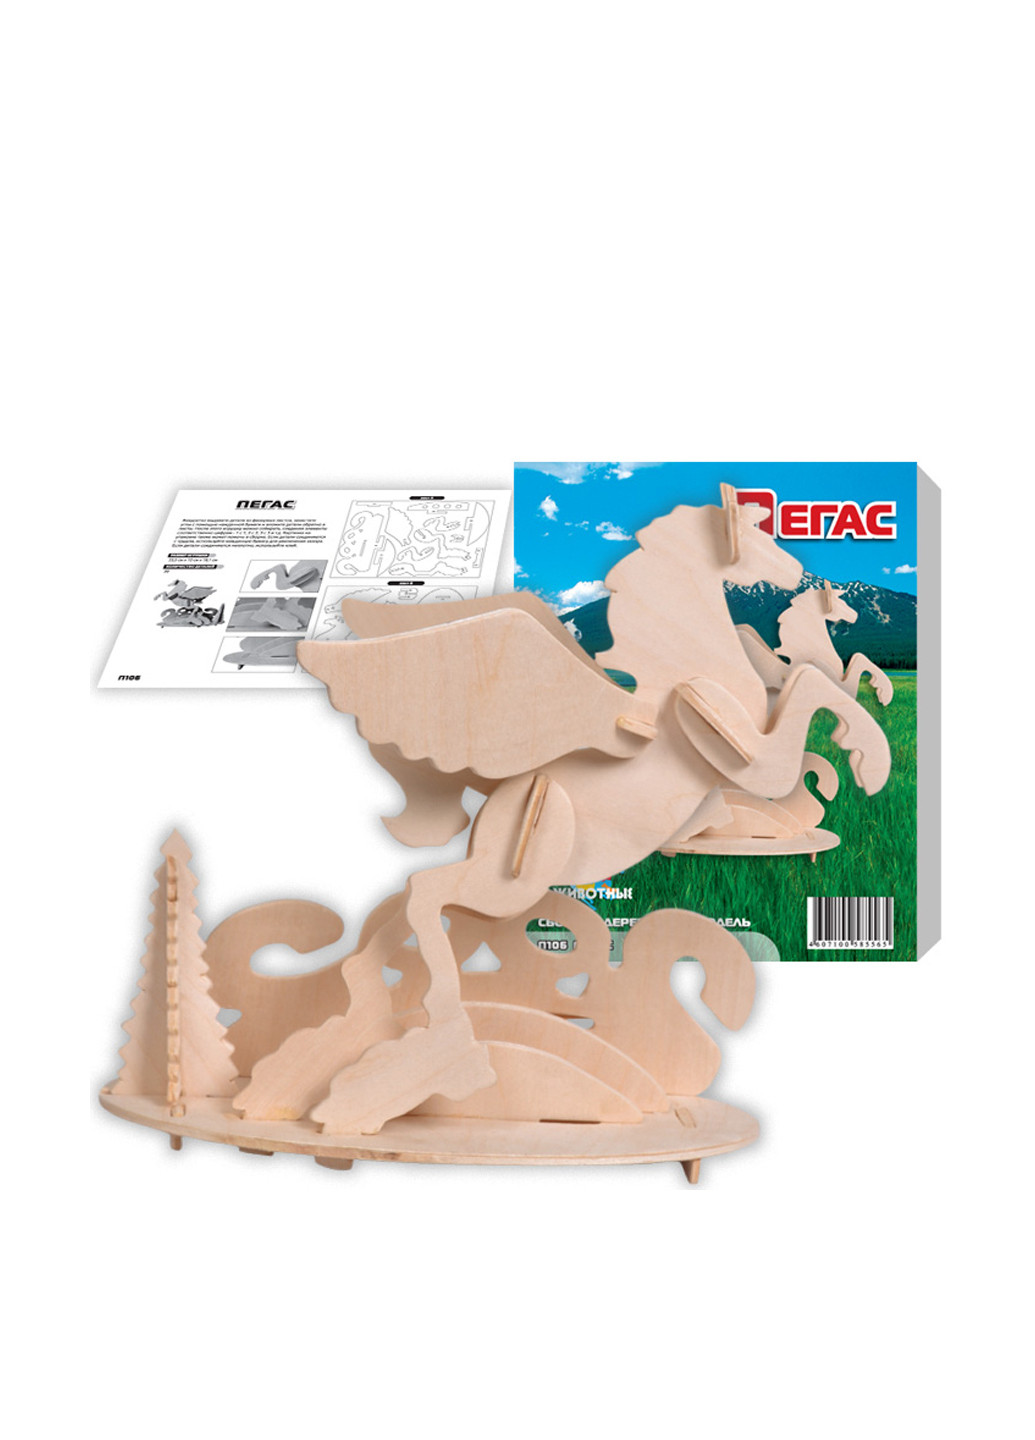 Деревянная игрушка Пегас, 24x10x19 см Игрушки из дерева (81043360)